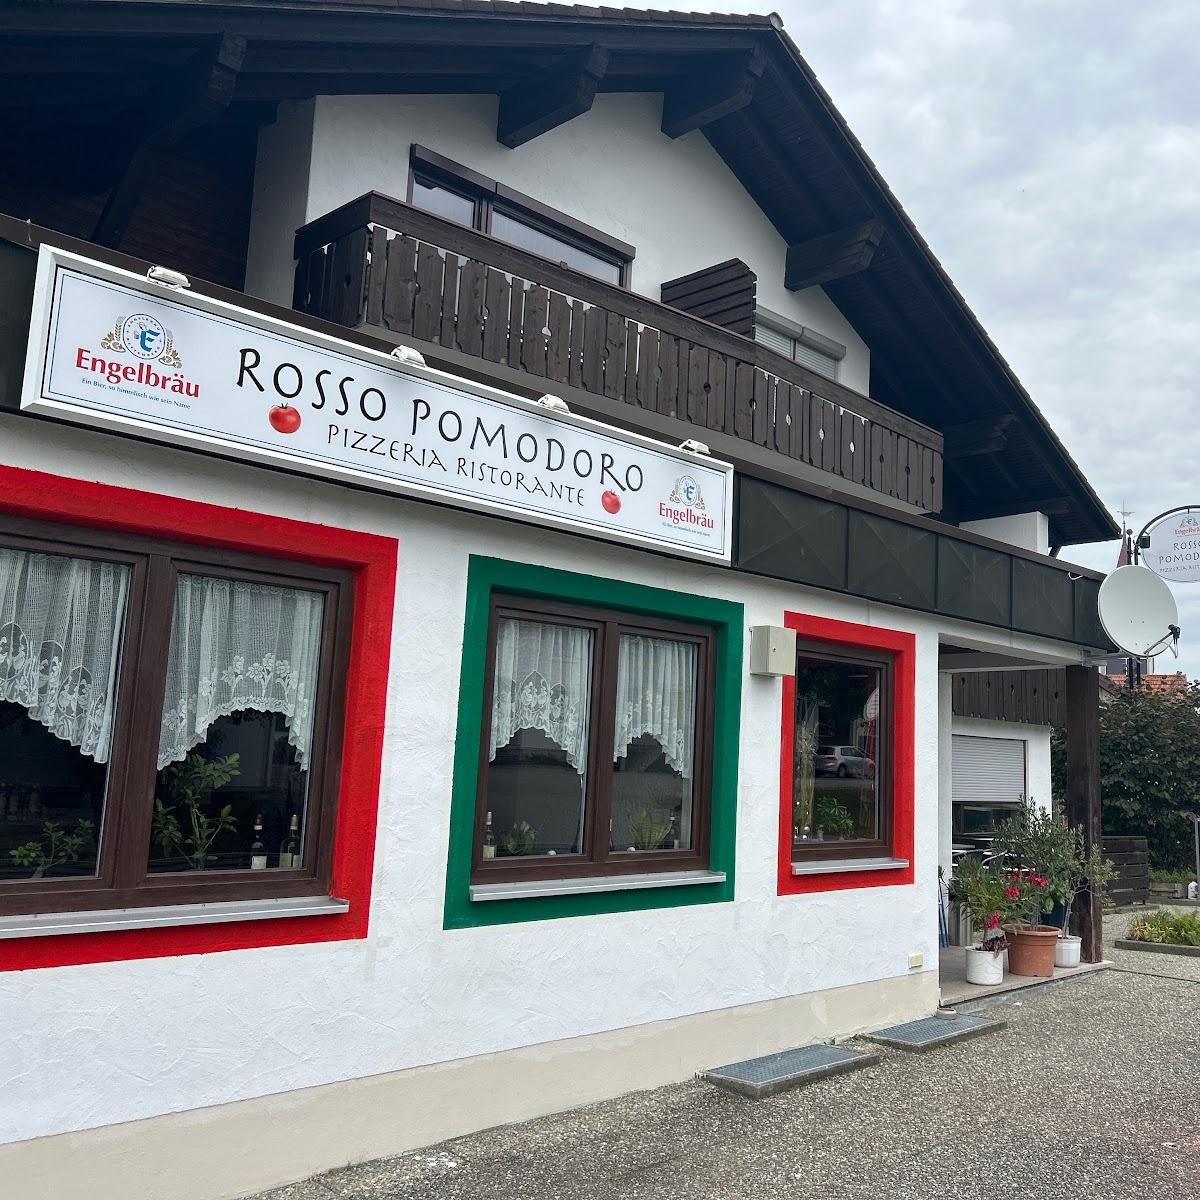 Restaurant "Rosso Pomodoro" in Oy-Mittelberg